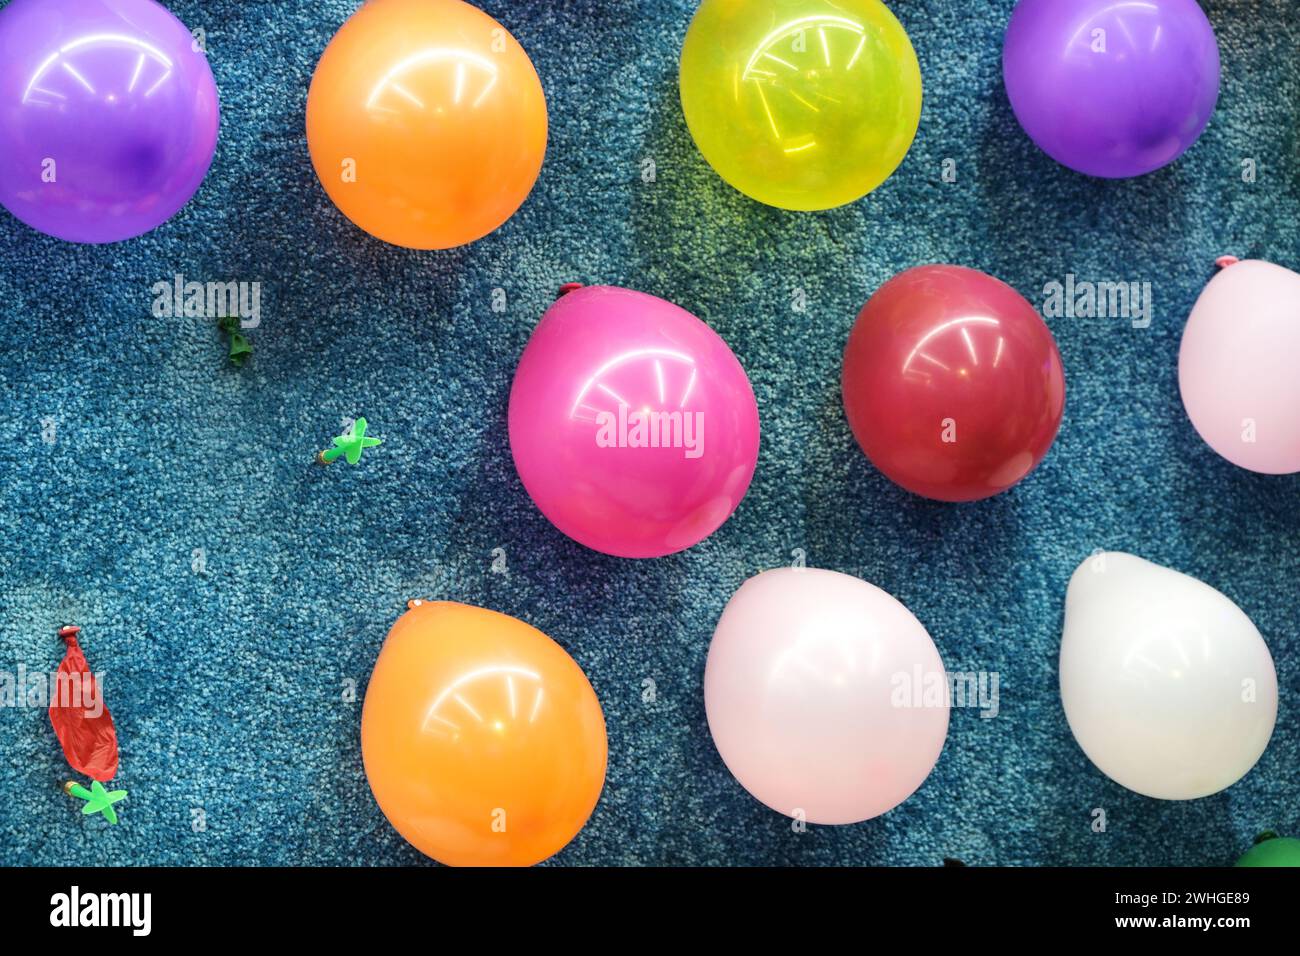 Ballonpfeil an einer Wand, zwei Ballons sind geplatzt, werfen Spiel auf der Karnevalsmesse, ausgewählter Fokus, Stockfoto